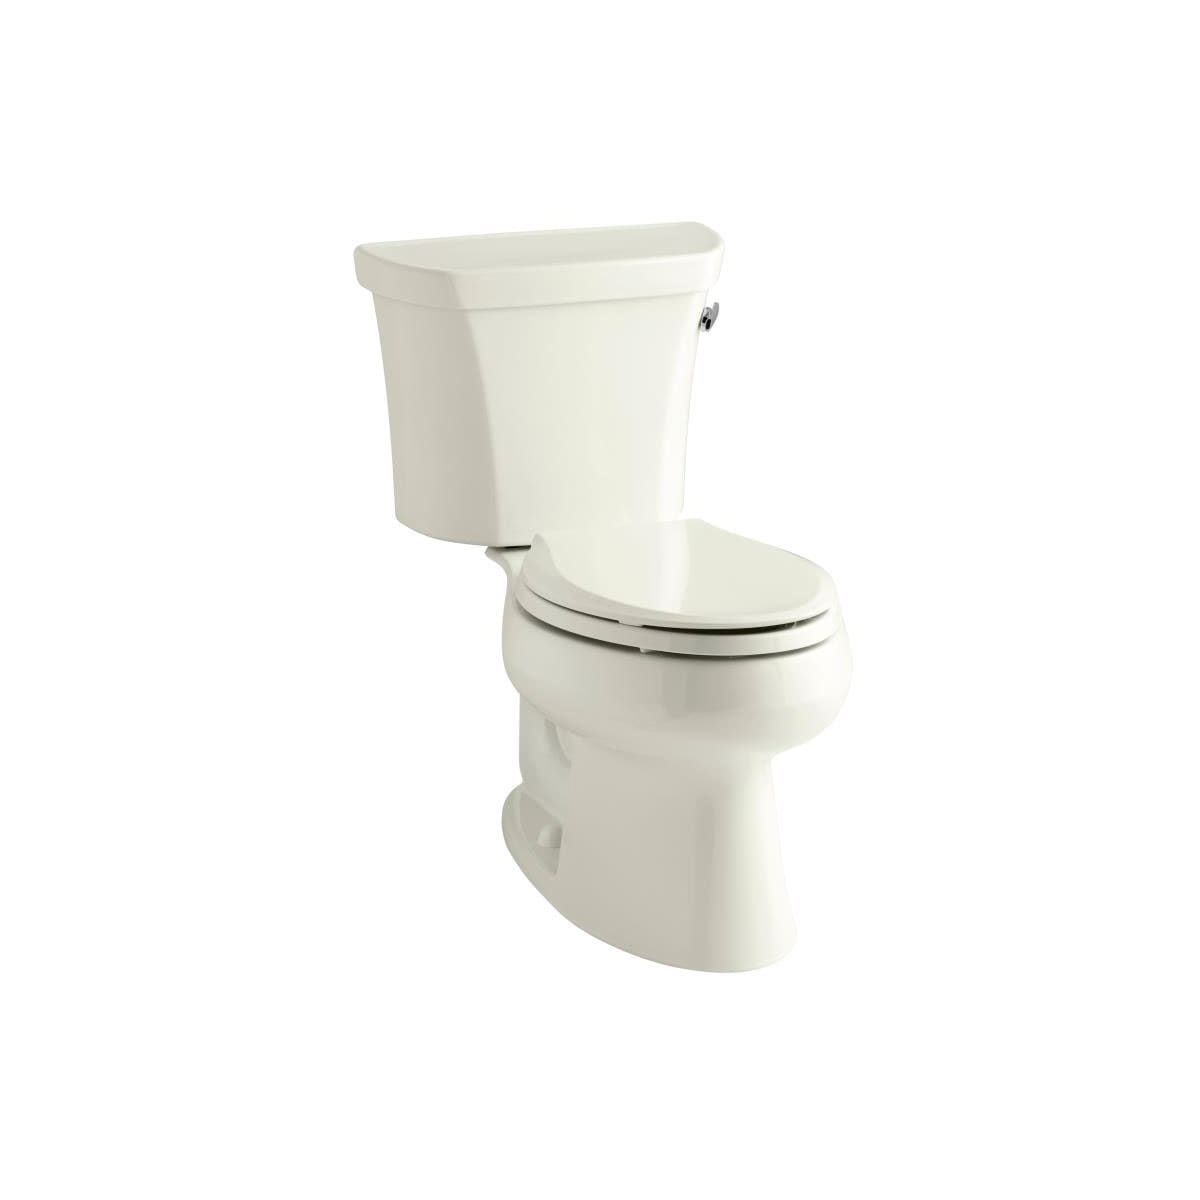 Kohler K-3978-RA-0 White 1.6 GPF Two-Piece Elongated Toilet with 12